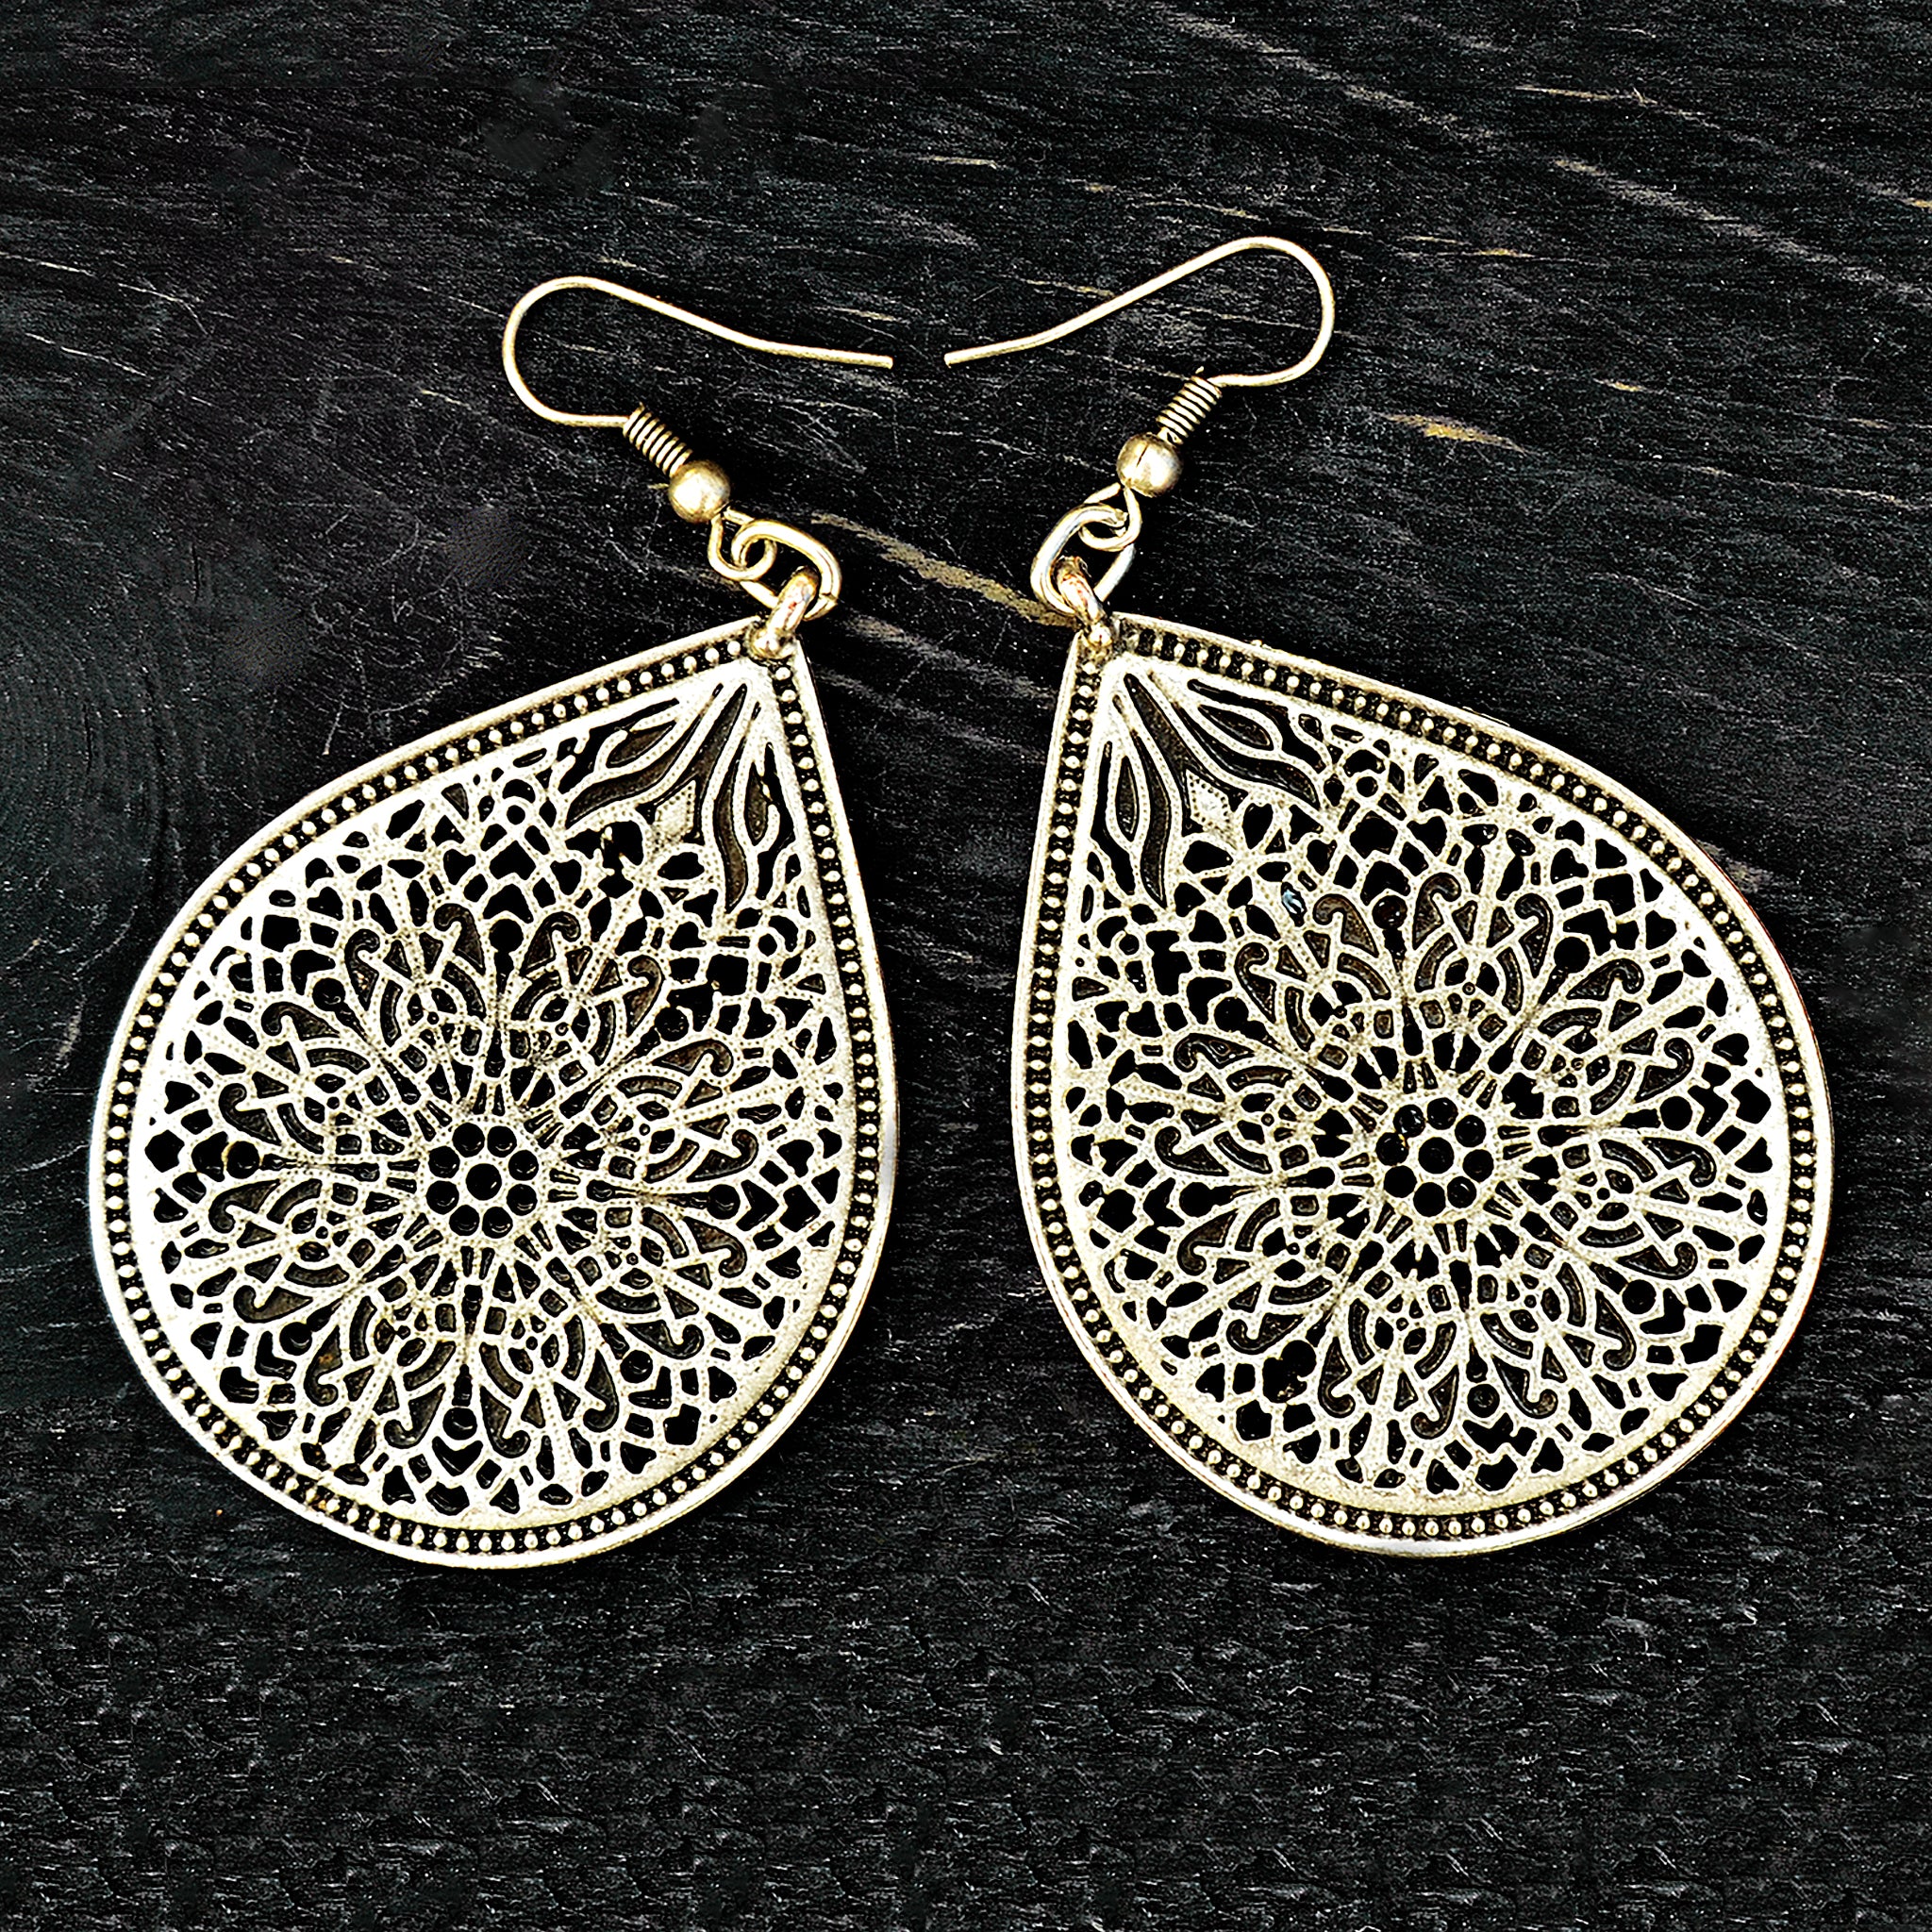 Ethnic filigree earrings